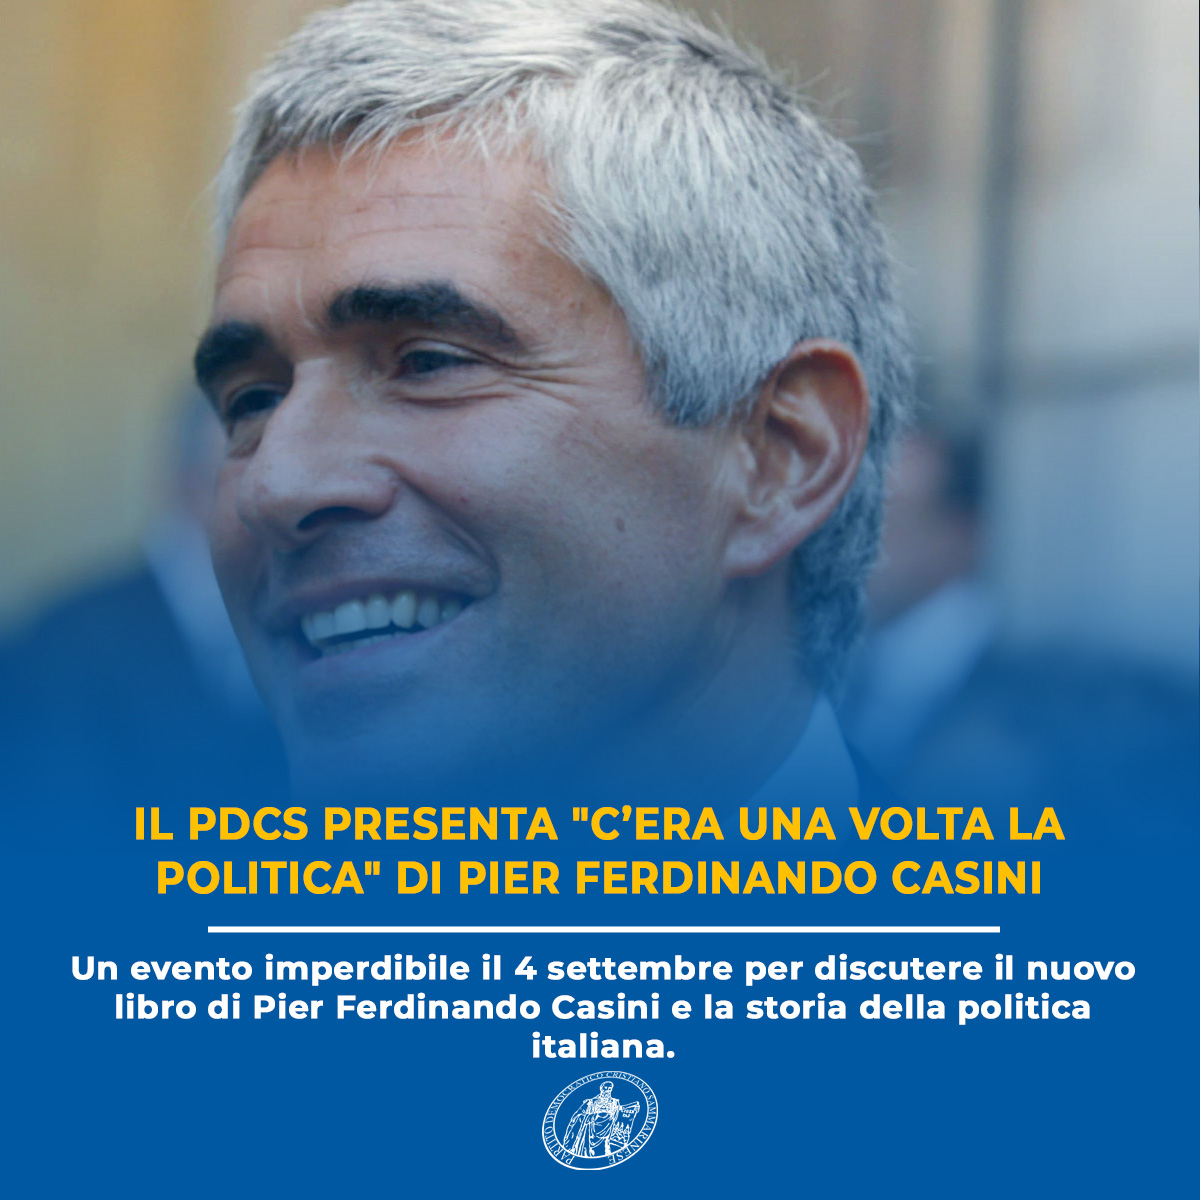 Il PDCS presenta “C’era una volta la politica” di Pier Ferdinando Casini